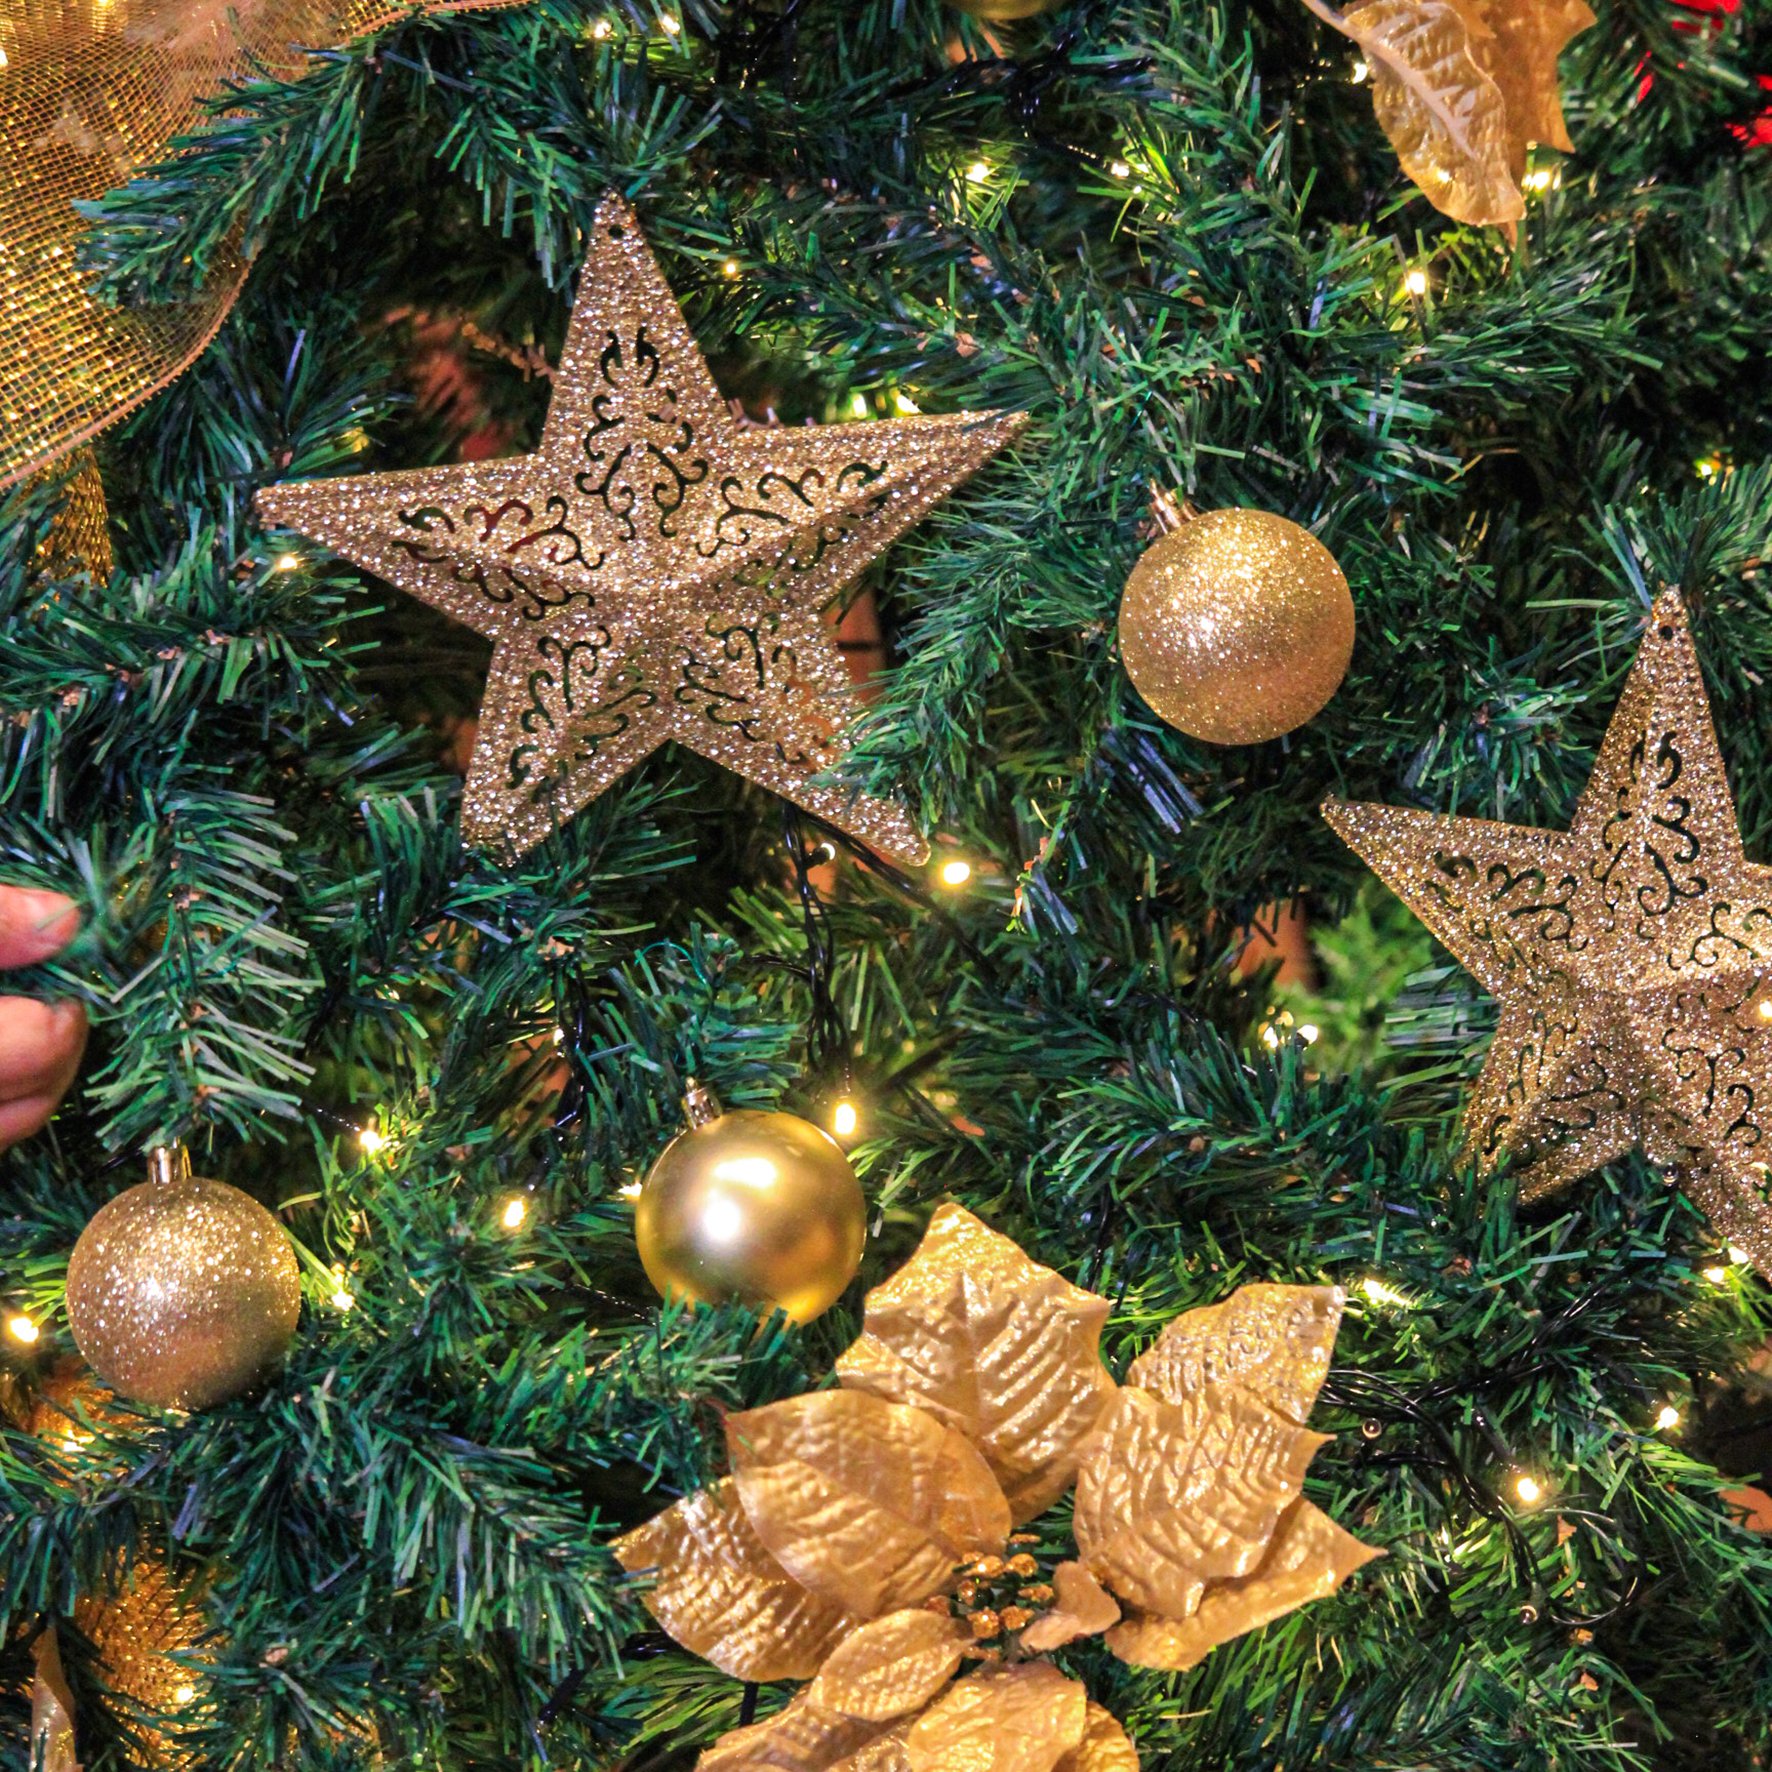 68 melhor ideia de Arvore de natal dourada  arvore de natal dourada,  árvores de natal decoradas, decoração de arvore de natal